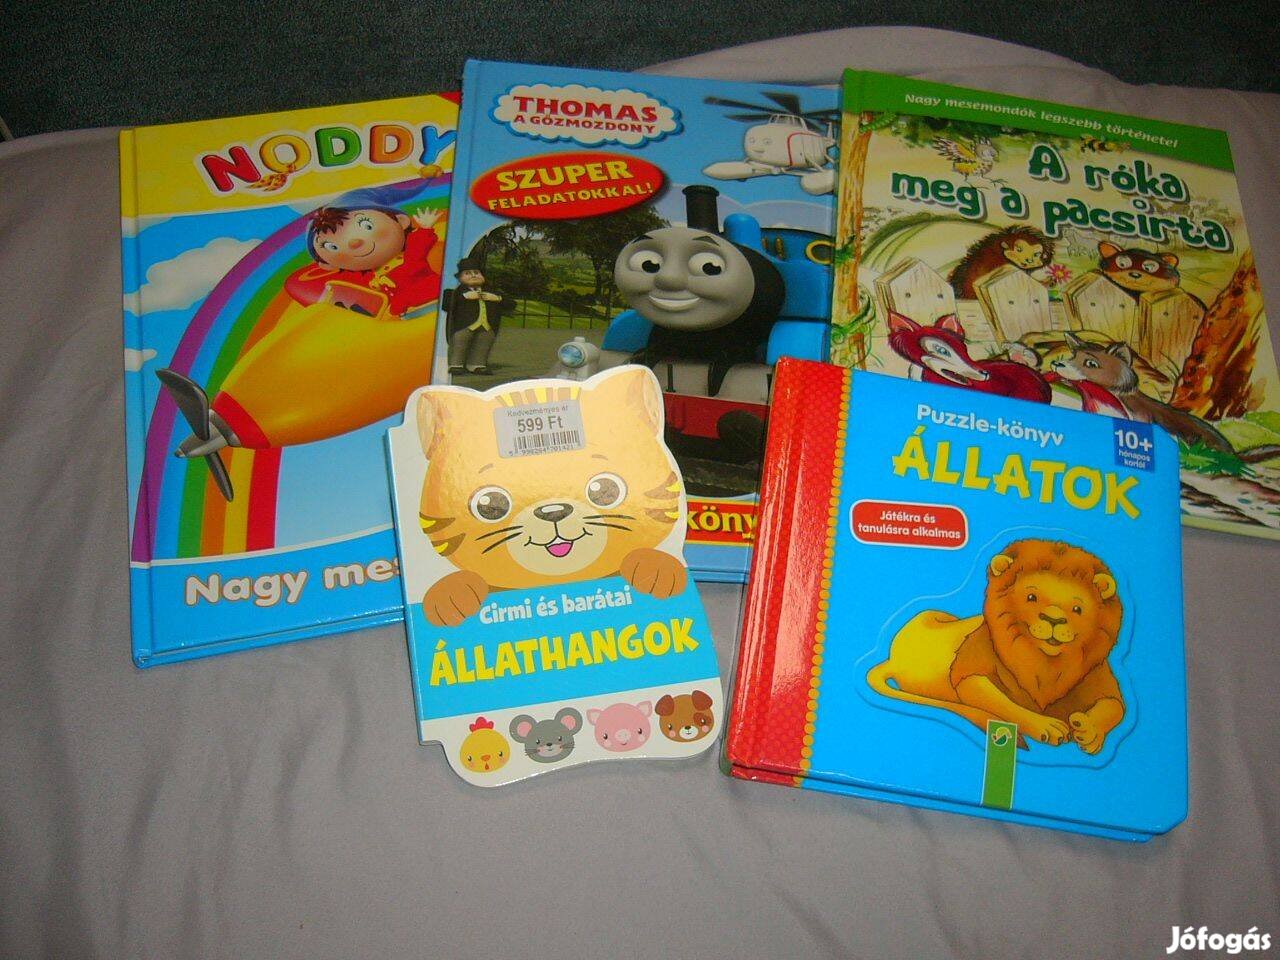 Mesekönyvek - Thomas, Noddy, Állatok - puzzle könyv stb. 5 db